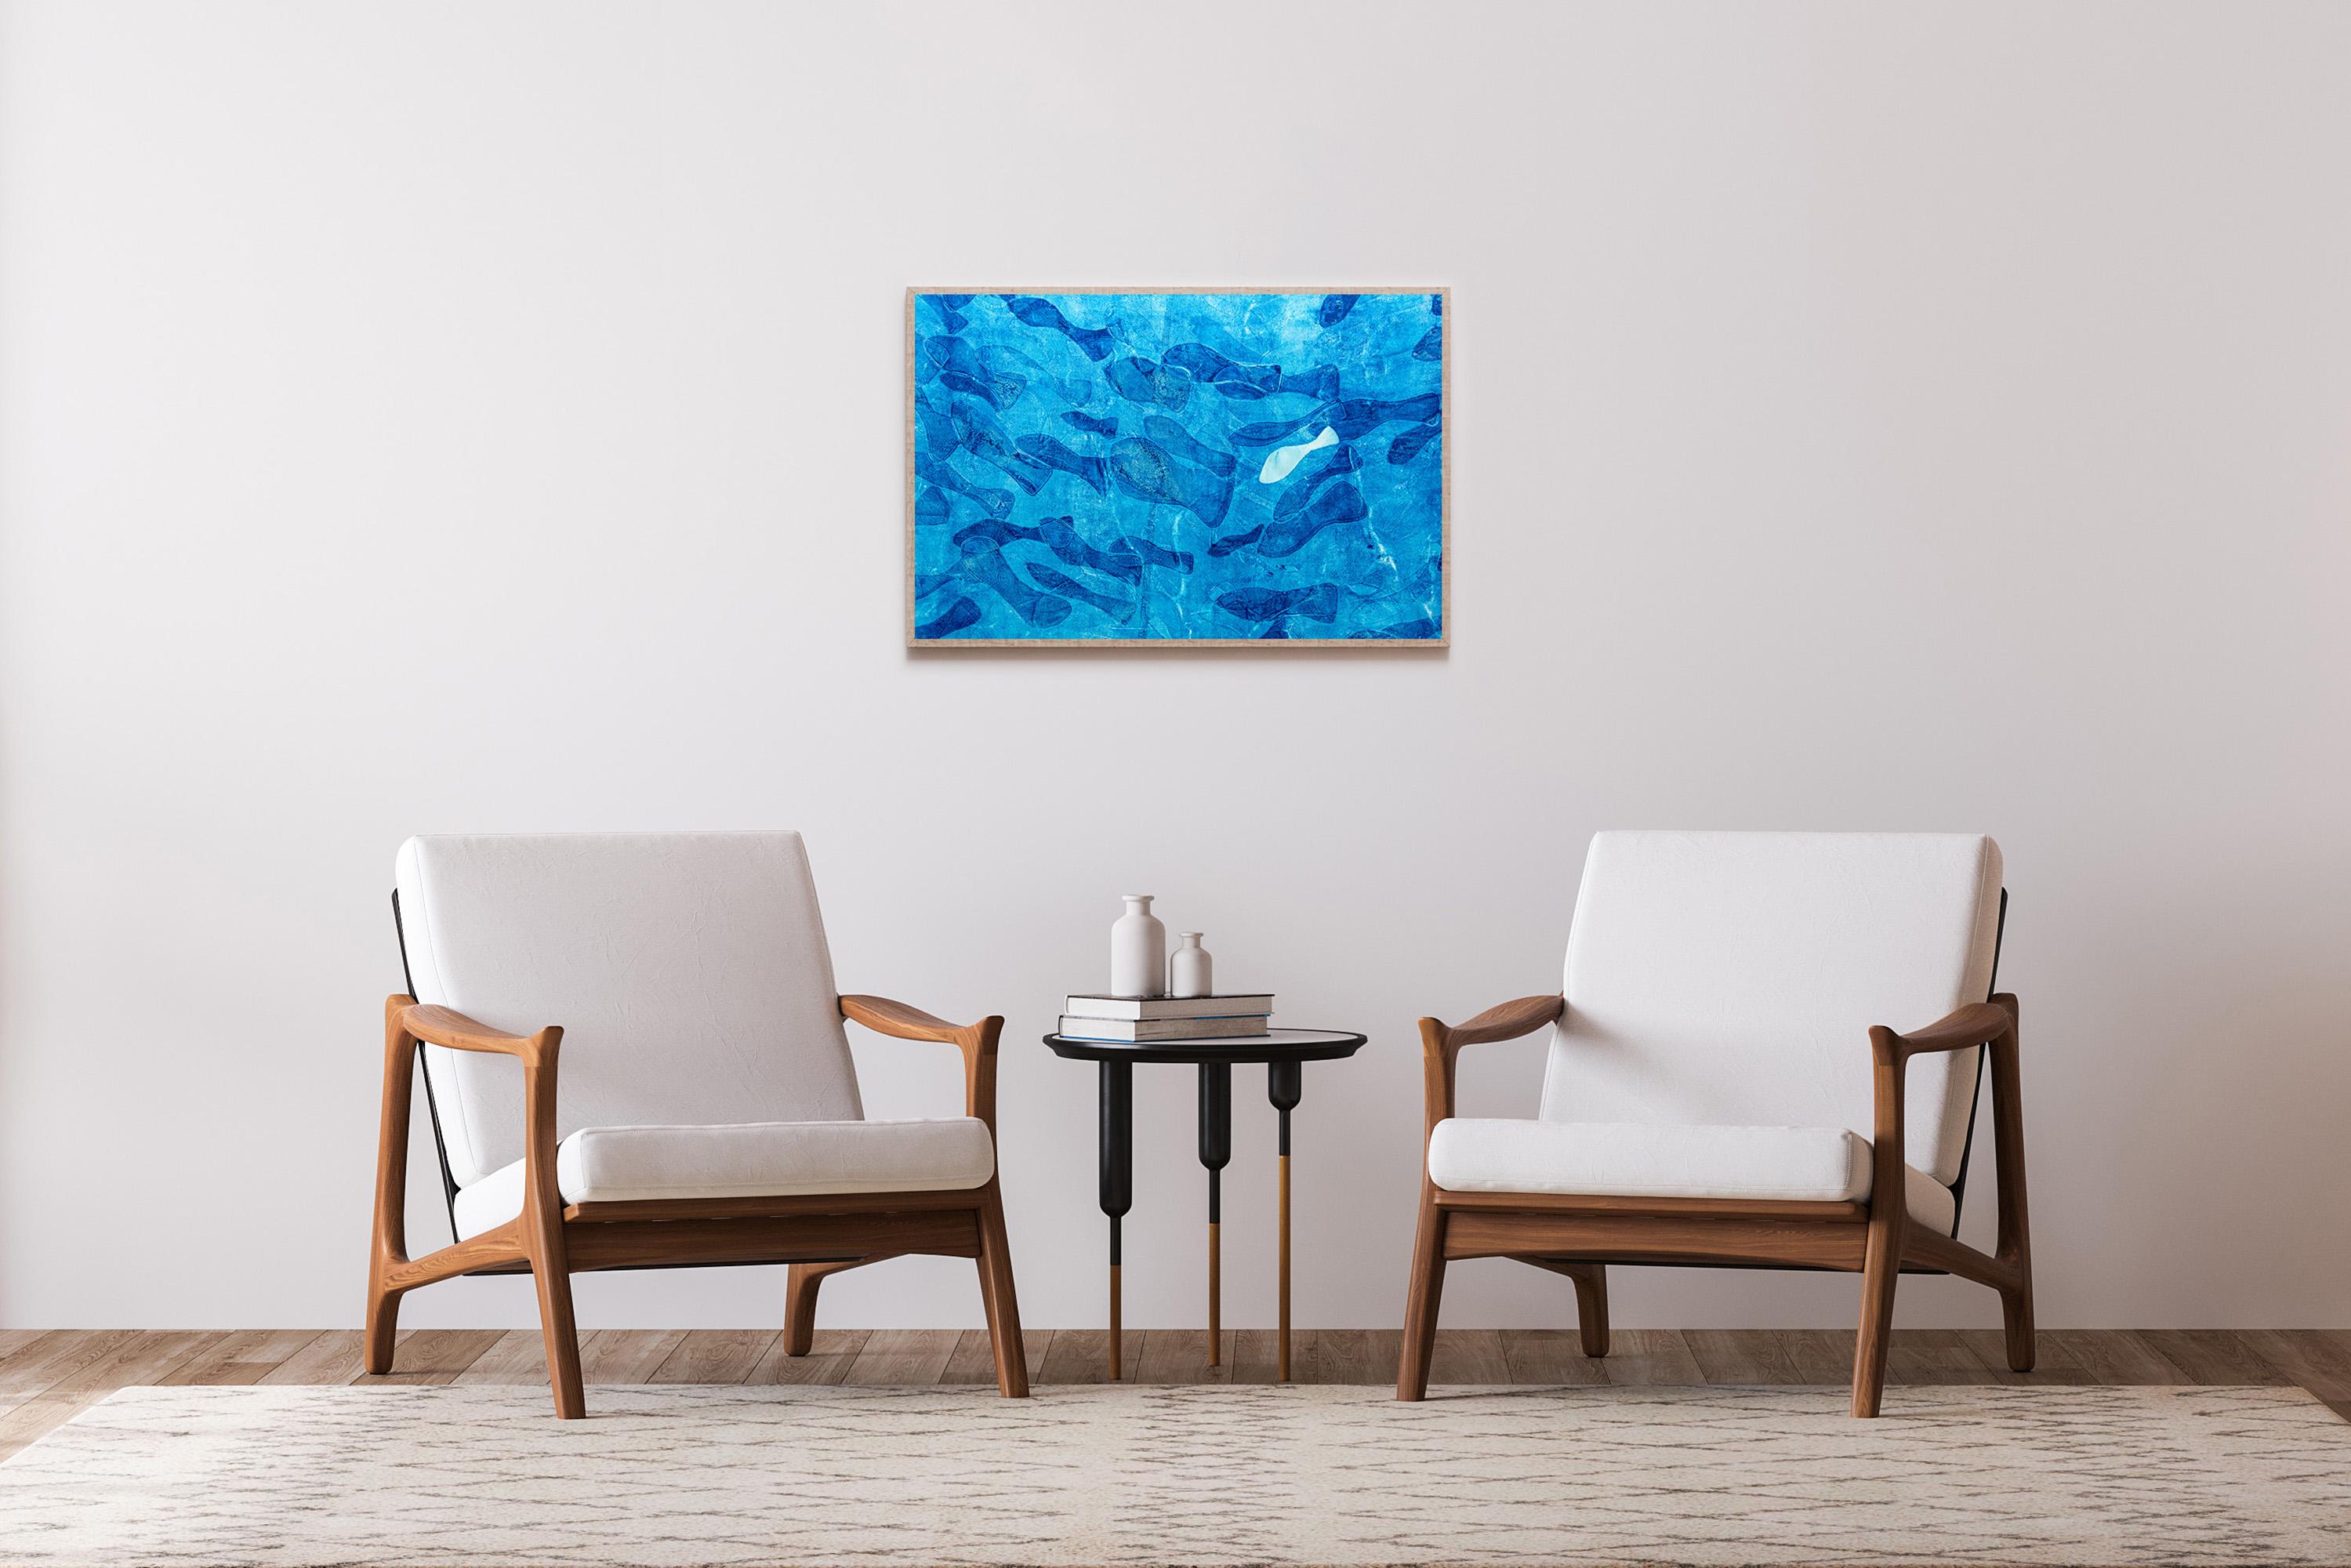 Blaue Töne, Abstraktes figuratives Gemälde von  Fischmuster, Meereslandschaft auf Papier  – Painting von Enric Servera